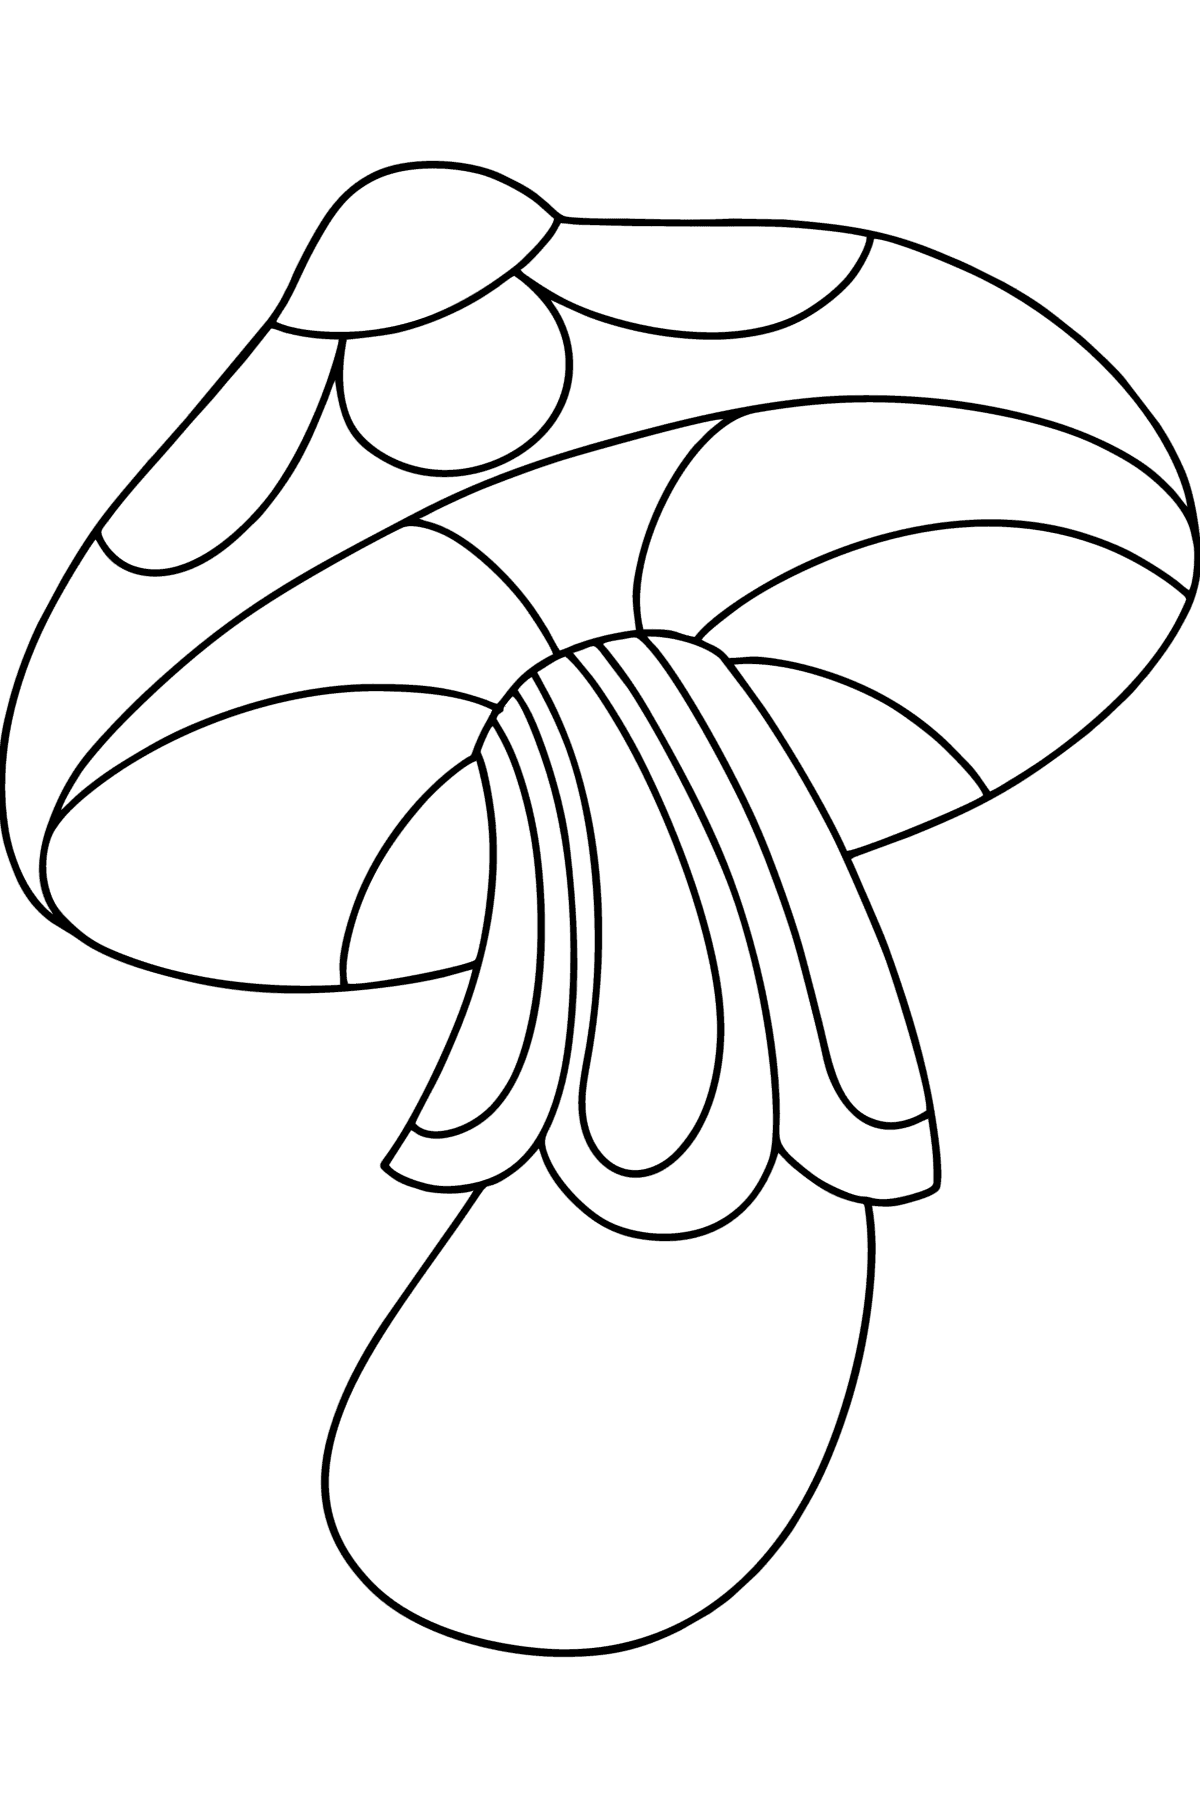 Розмальовка з грибами дзентангл - Розмальовки для дітей